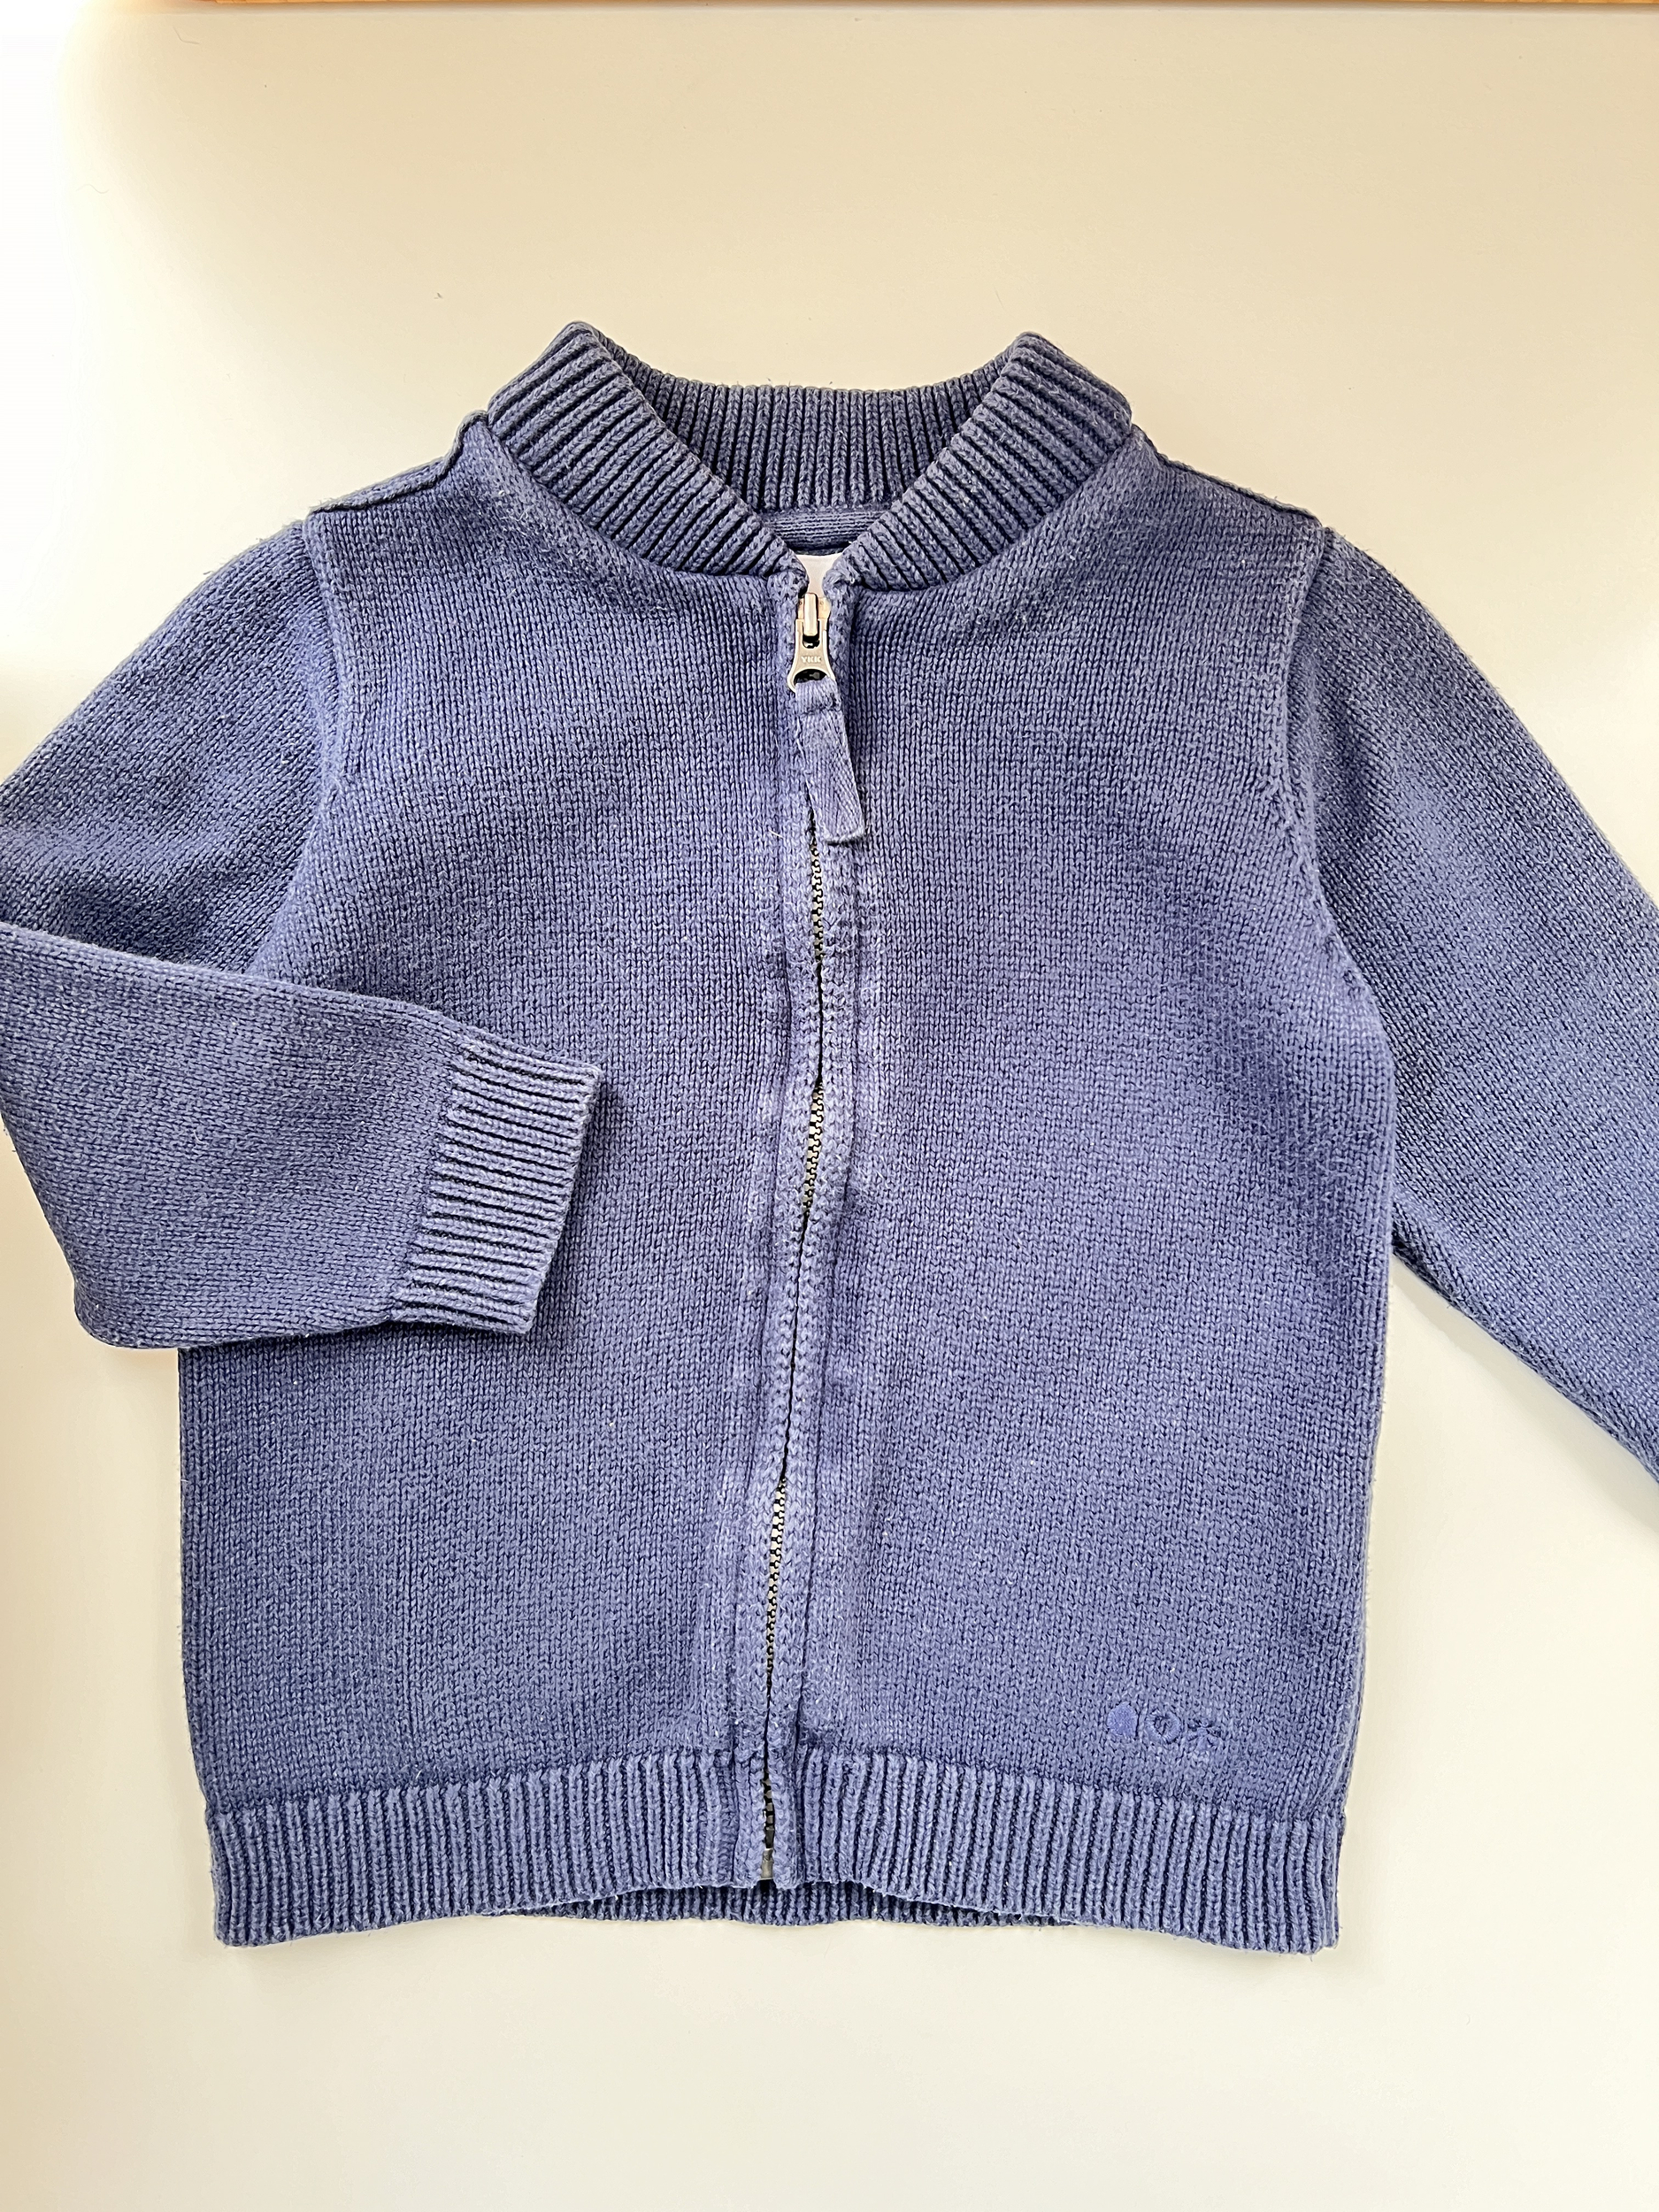 Gilet bleu 100% coton bébé garçon - Du Pareil au Même DPAM - 18 mois